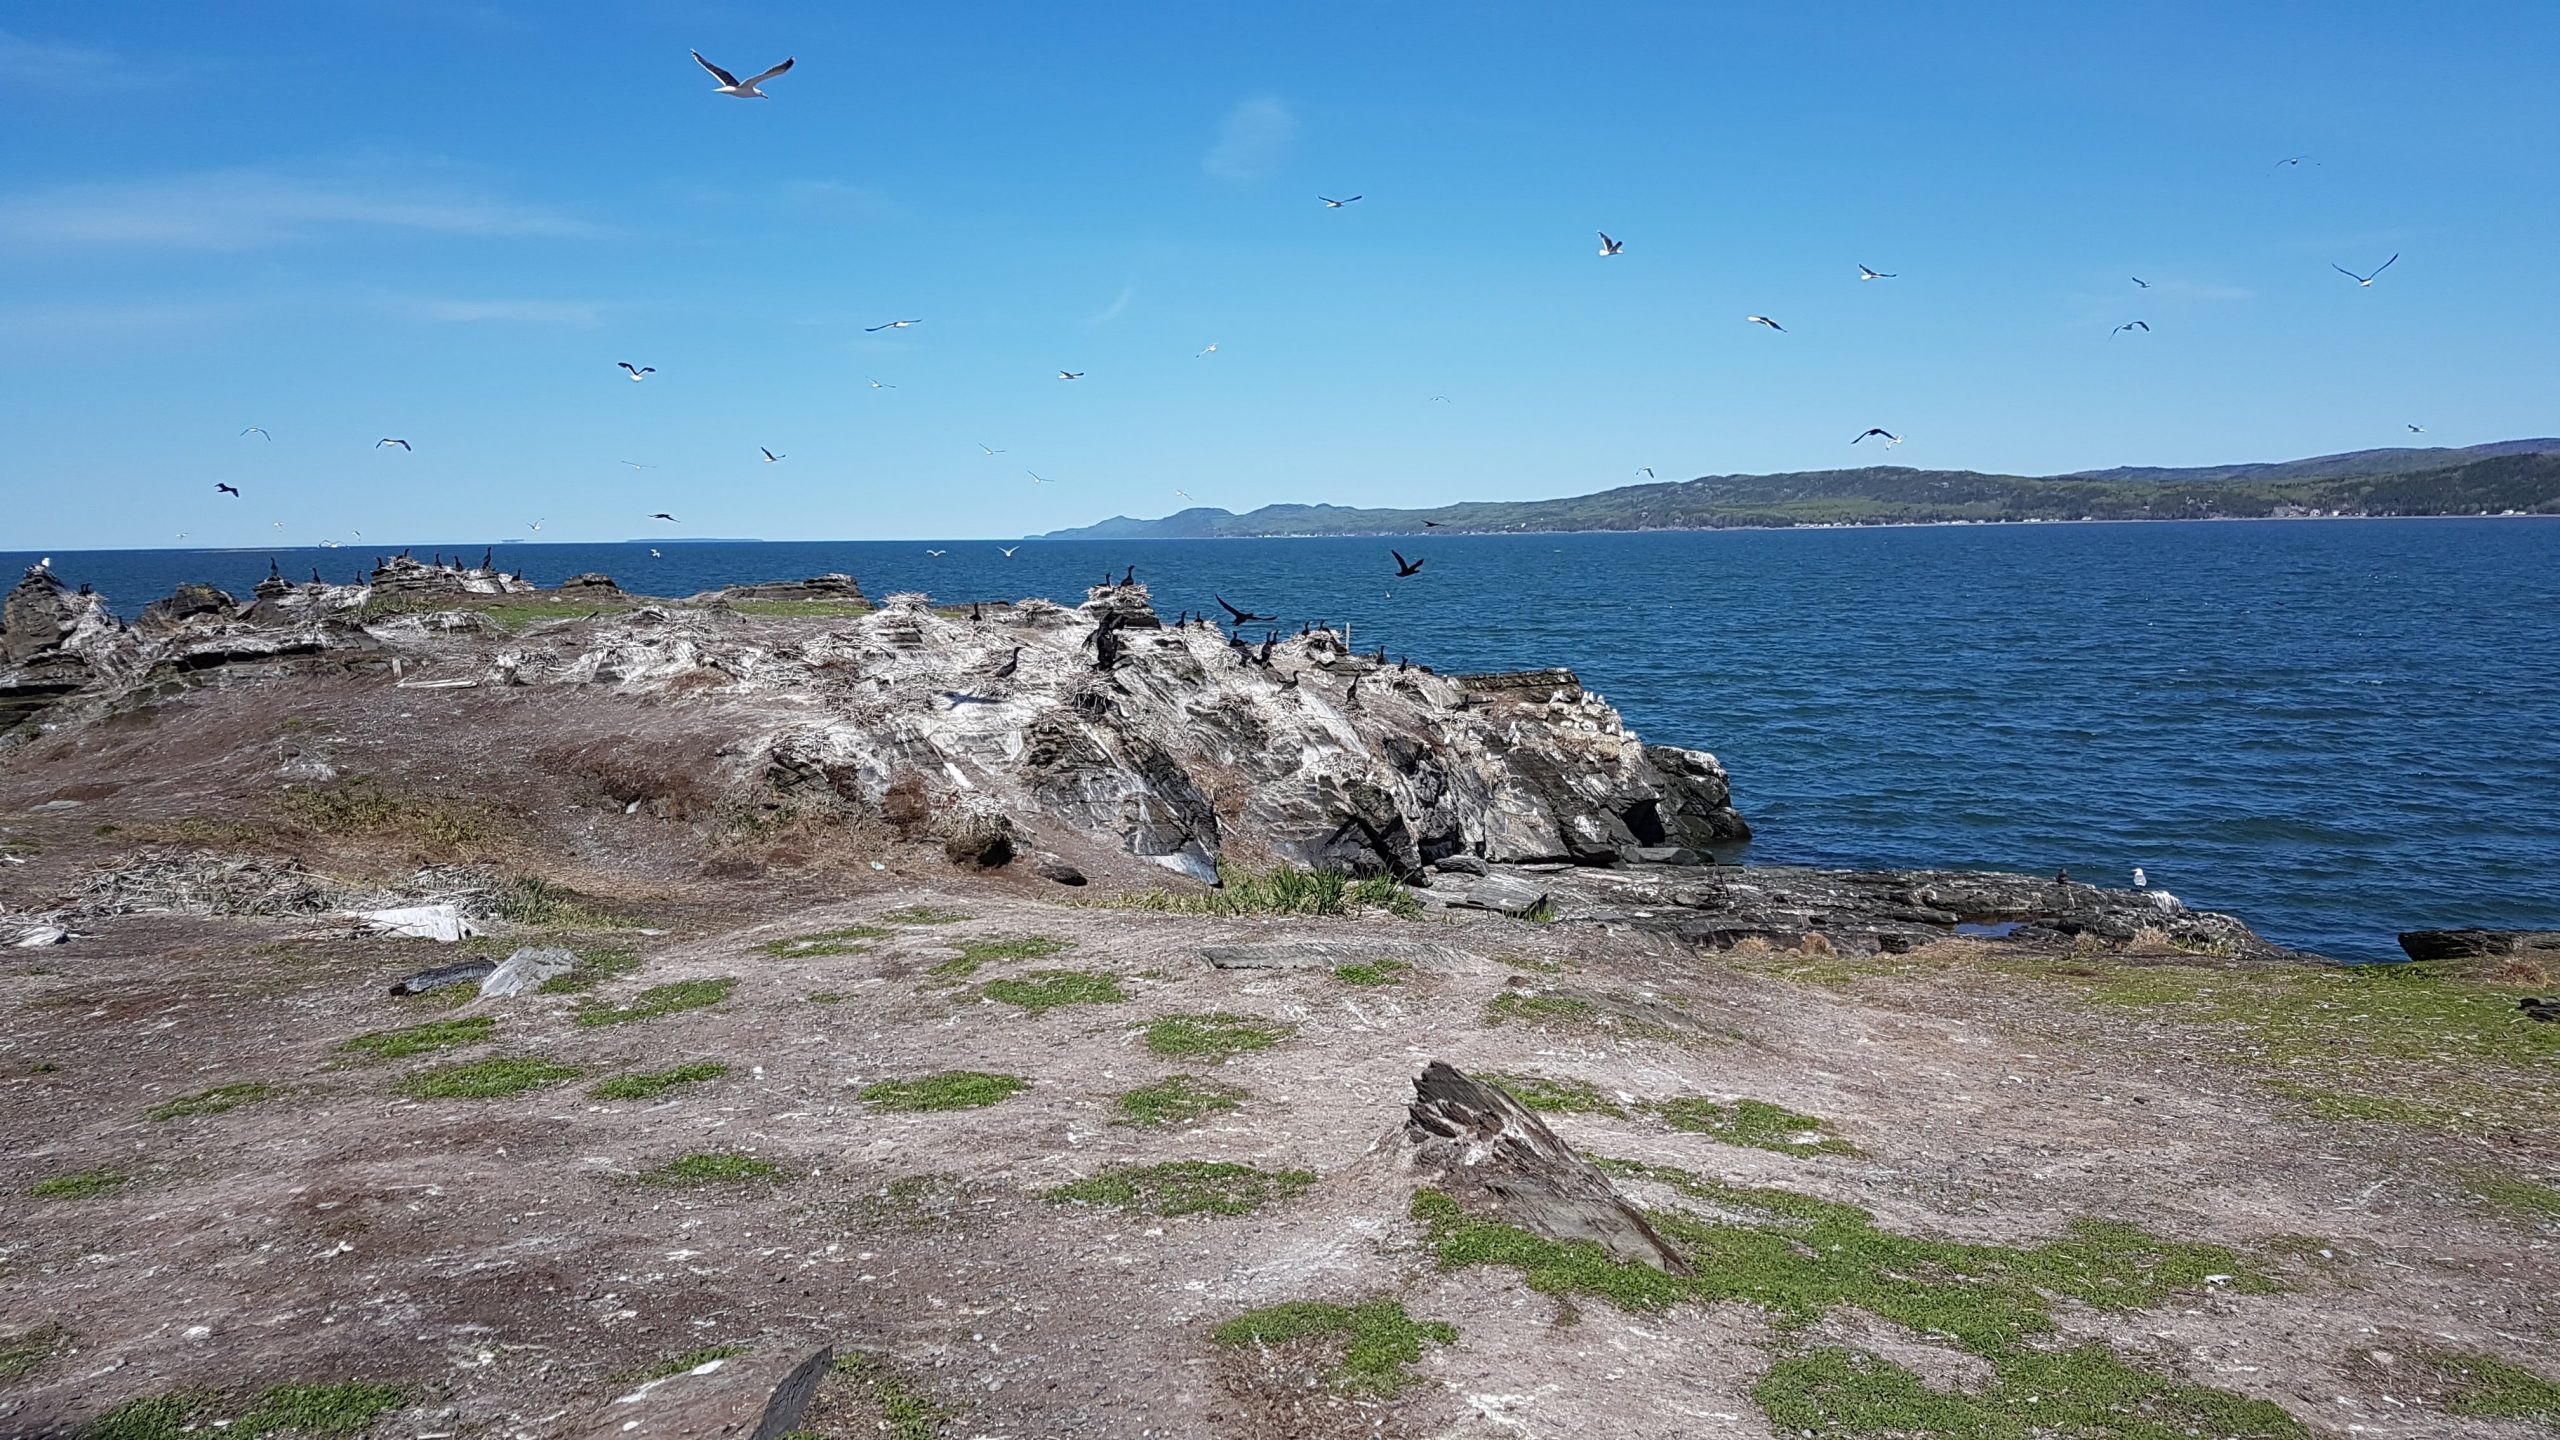 Inventaire des oiseaux marins aux îles Razade, le 27 mai 2018. Photo: Olivier Caron.